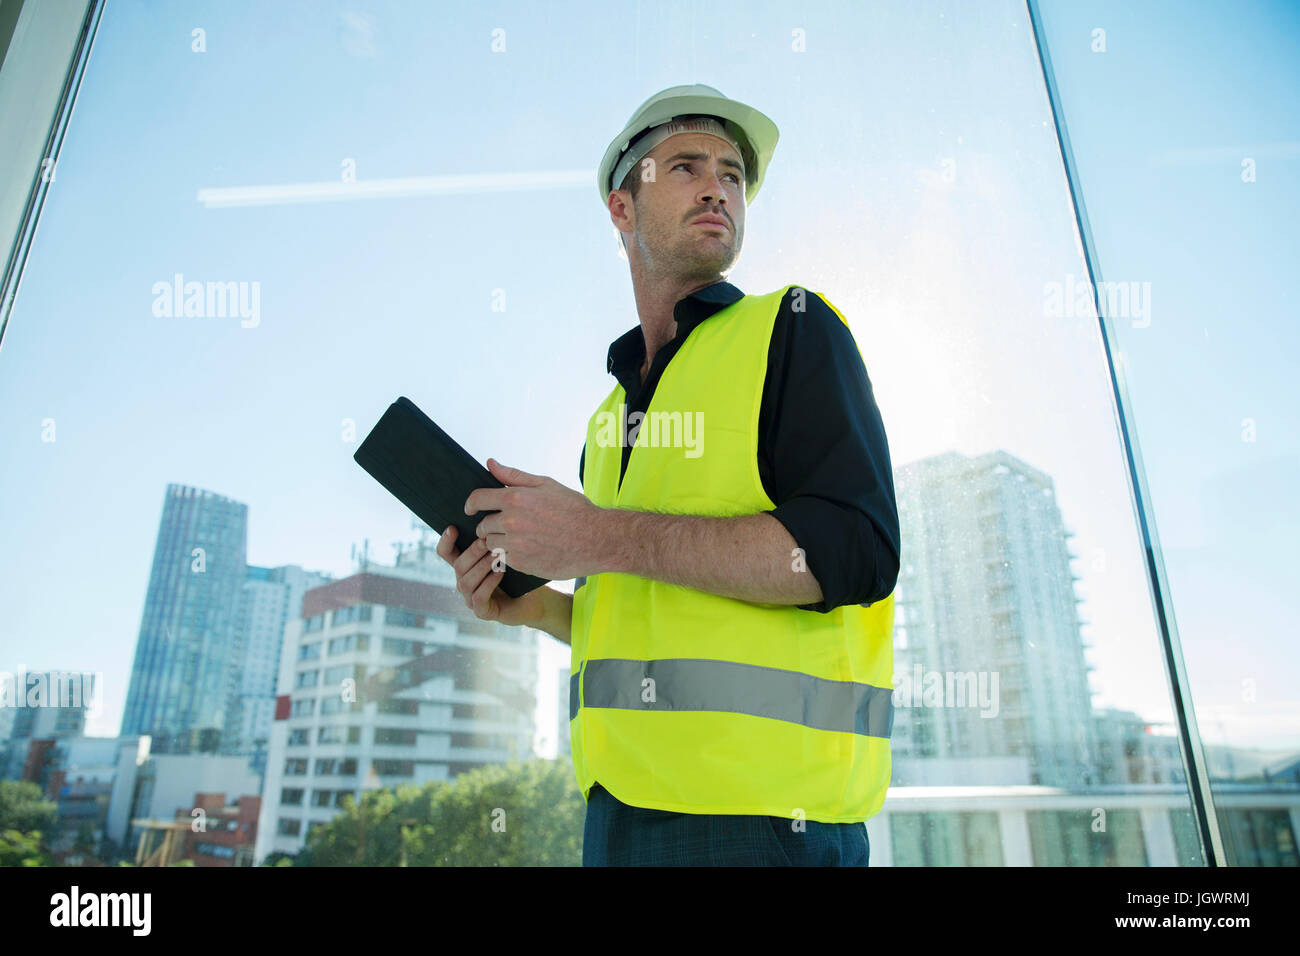 Mann, der hart trägt Hut und Hallo Weste Vis, mit digital-Tablette Stockfoto